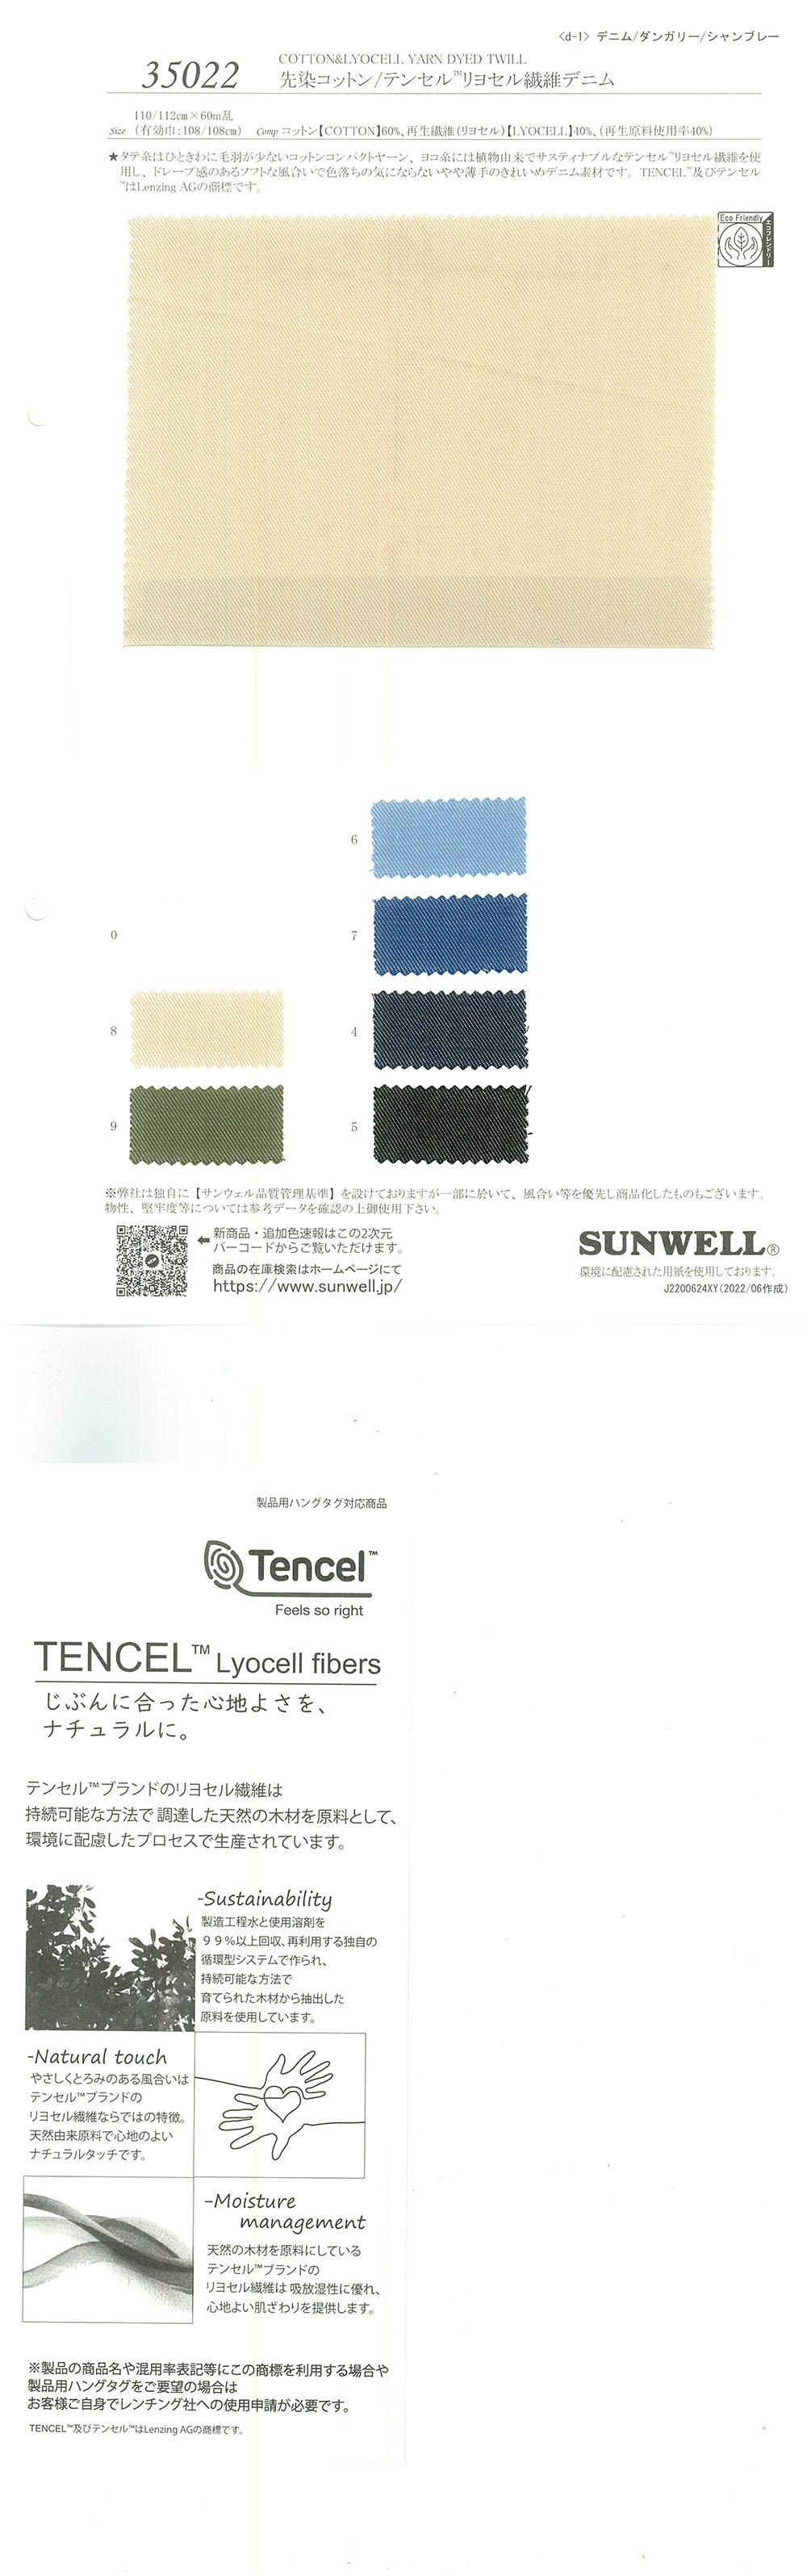 35022 Algodão Tingido Com Fio / Tencel (TM) Denim De Fibra De Liocel[Têxtil / Tecido] SUNWELL